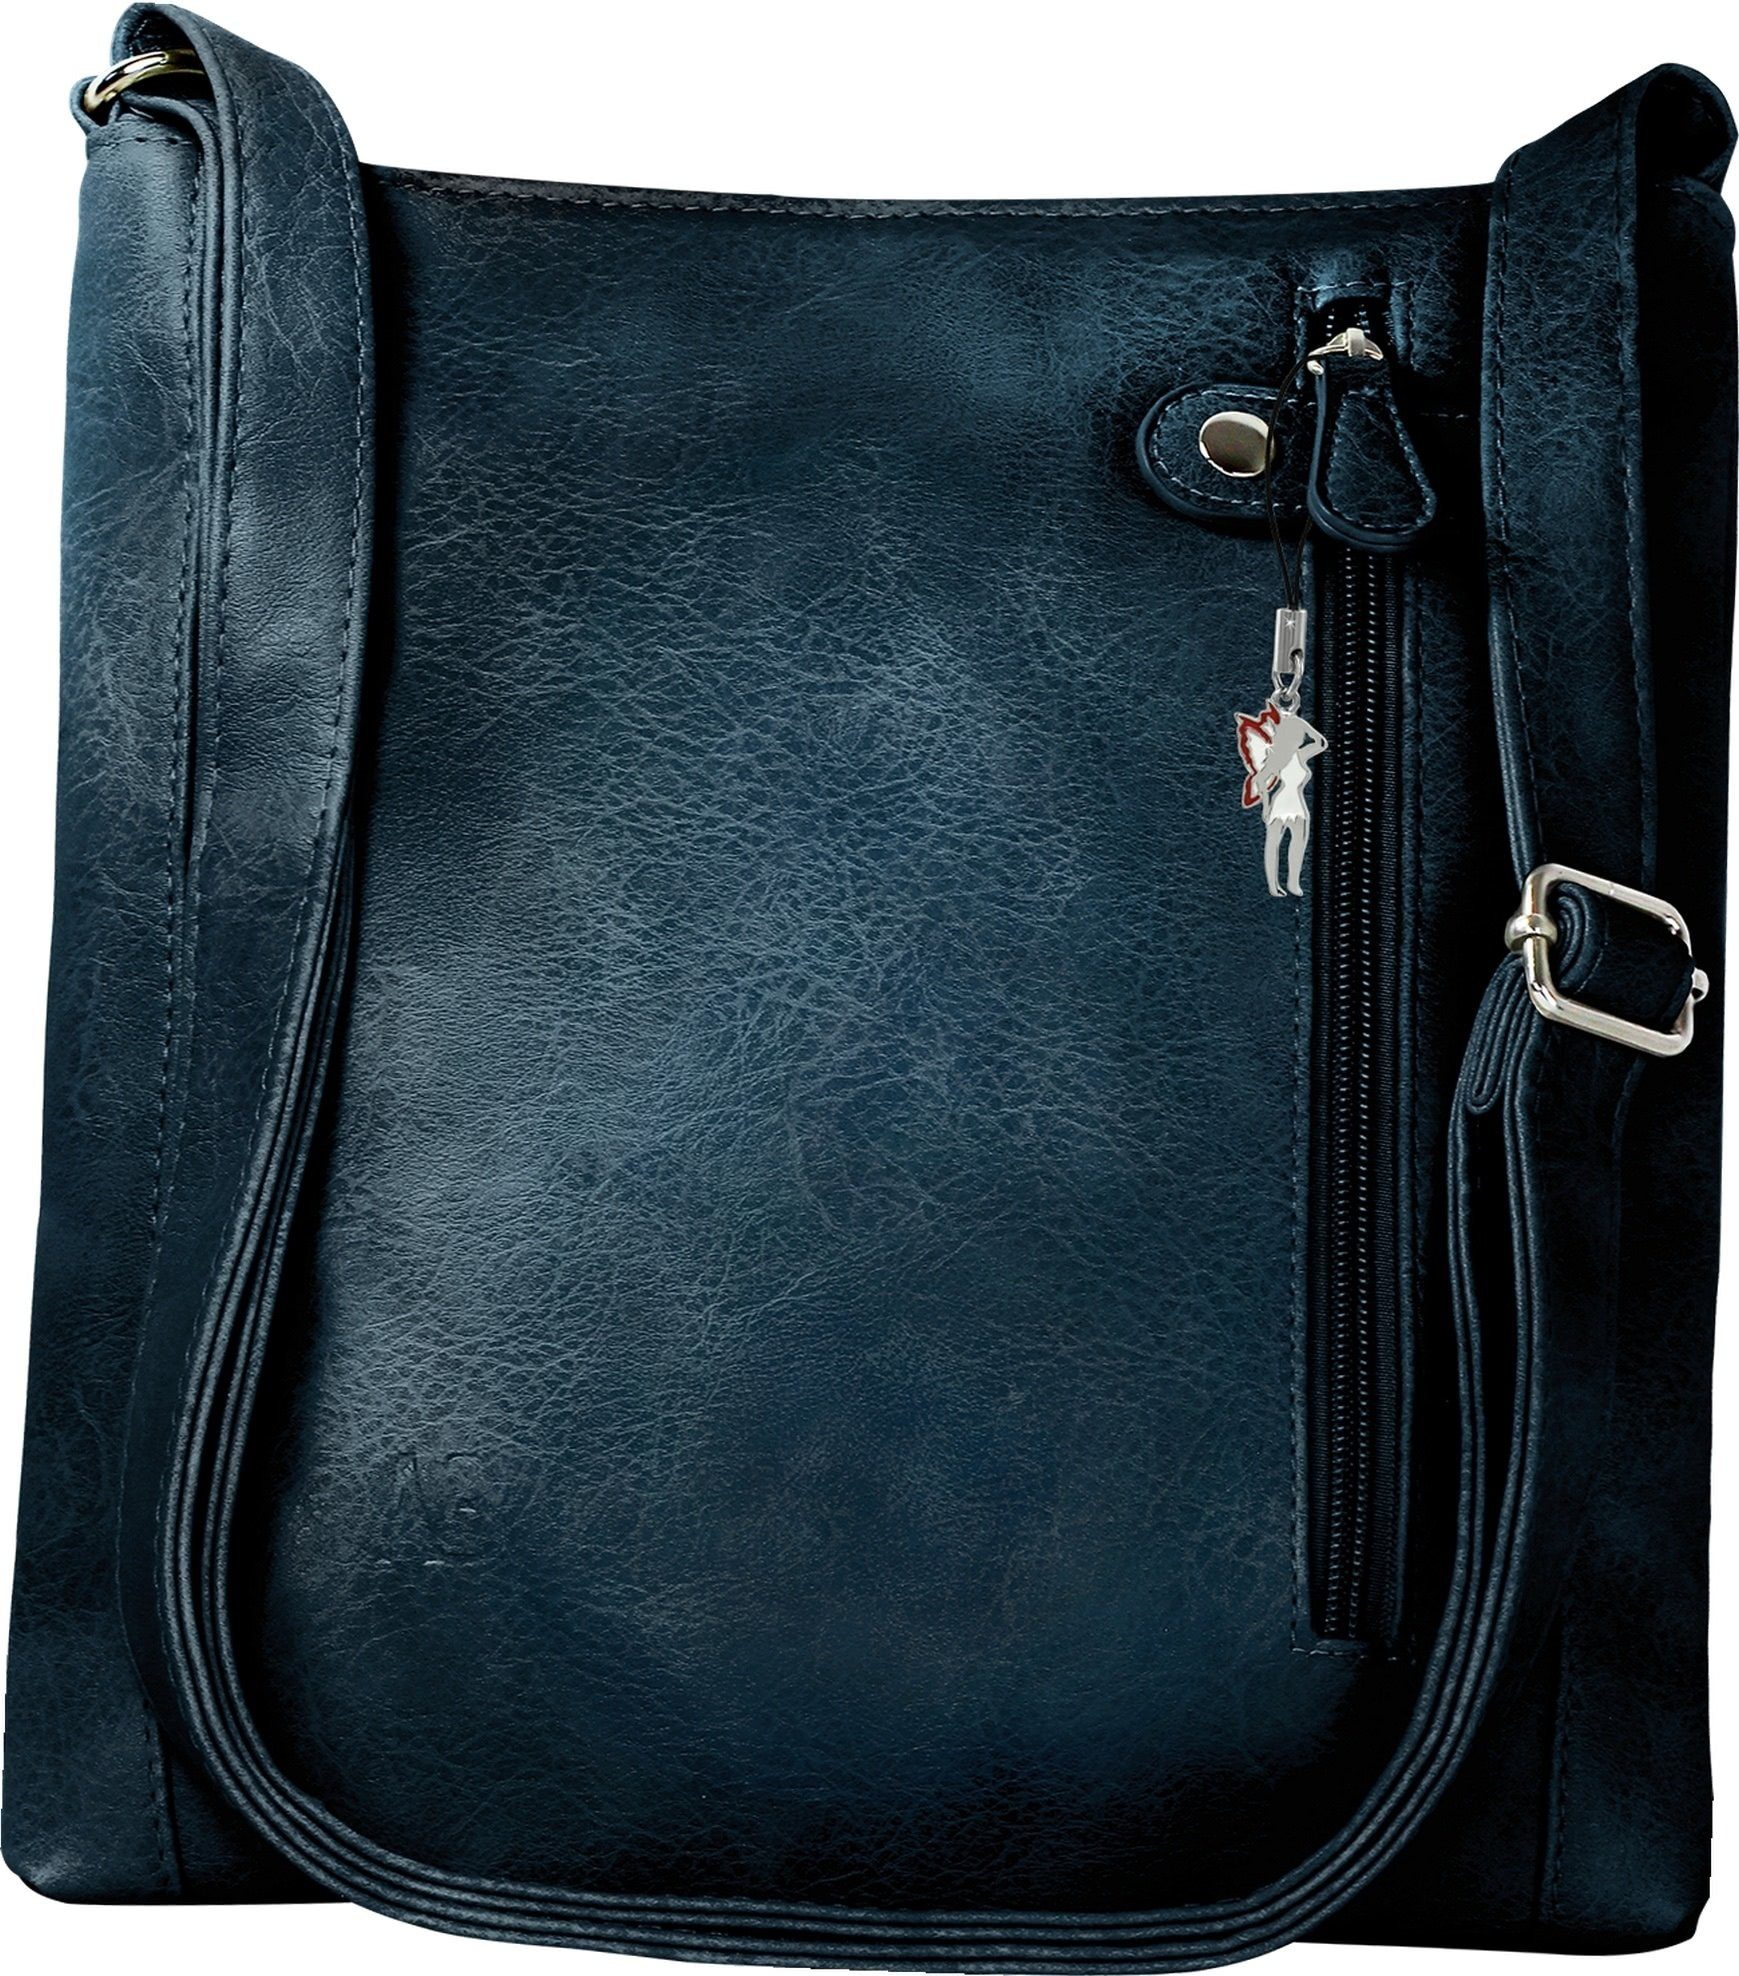 New Bags Umhängetasche New Bags Umhängetasche Handtasche, Damen Handtasche,  Umhängetasche PU, Kunstleder, navy, dunkelblau, Größ